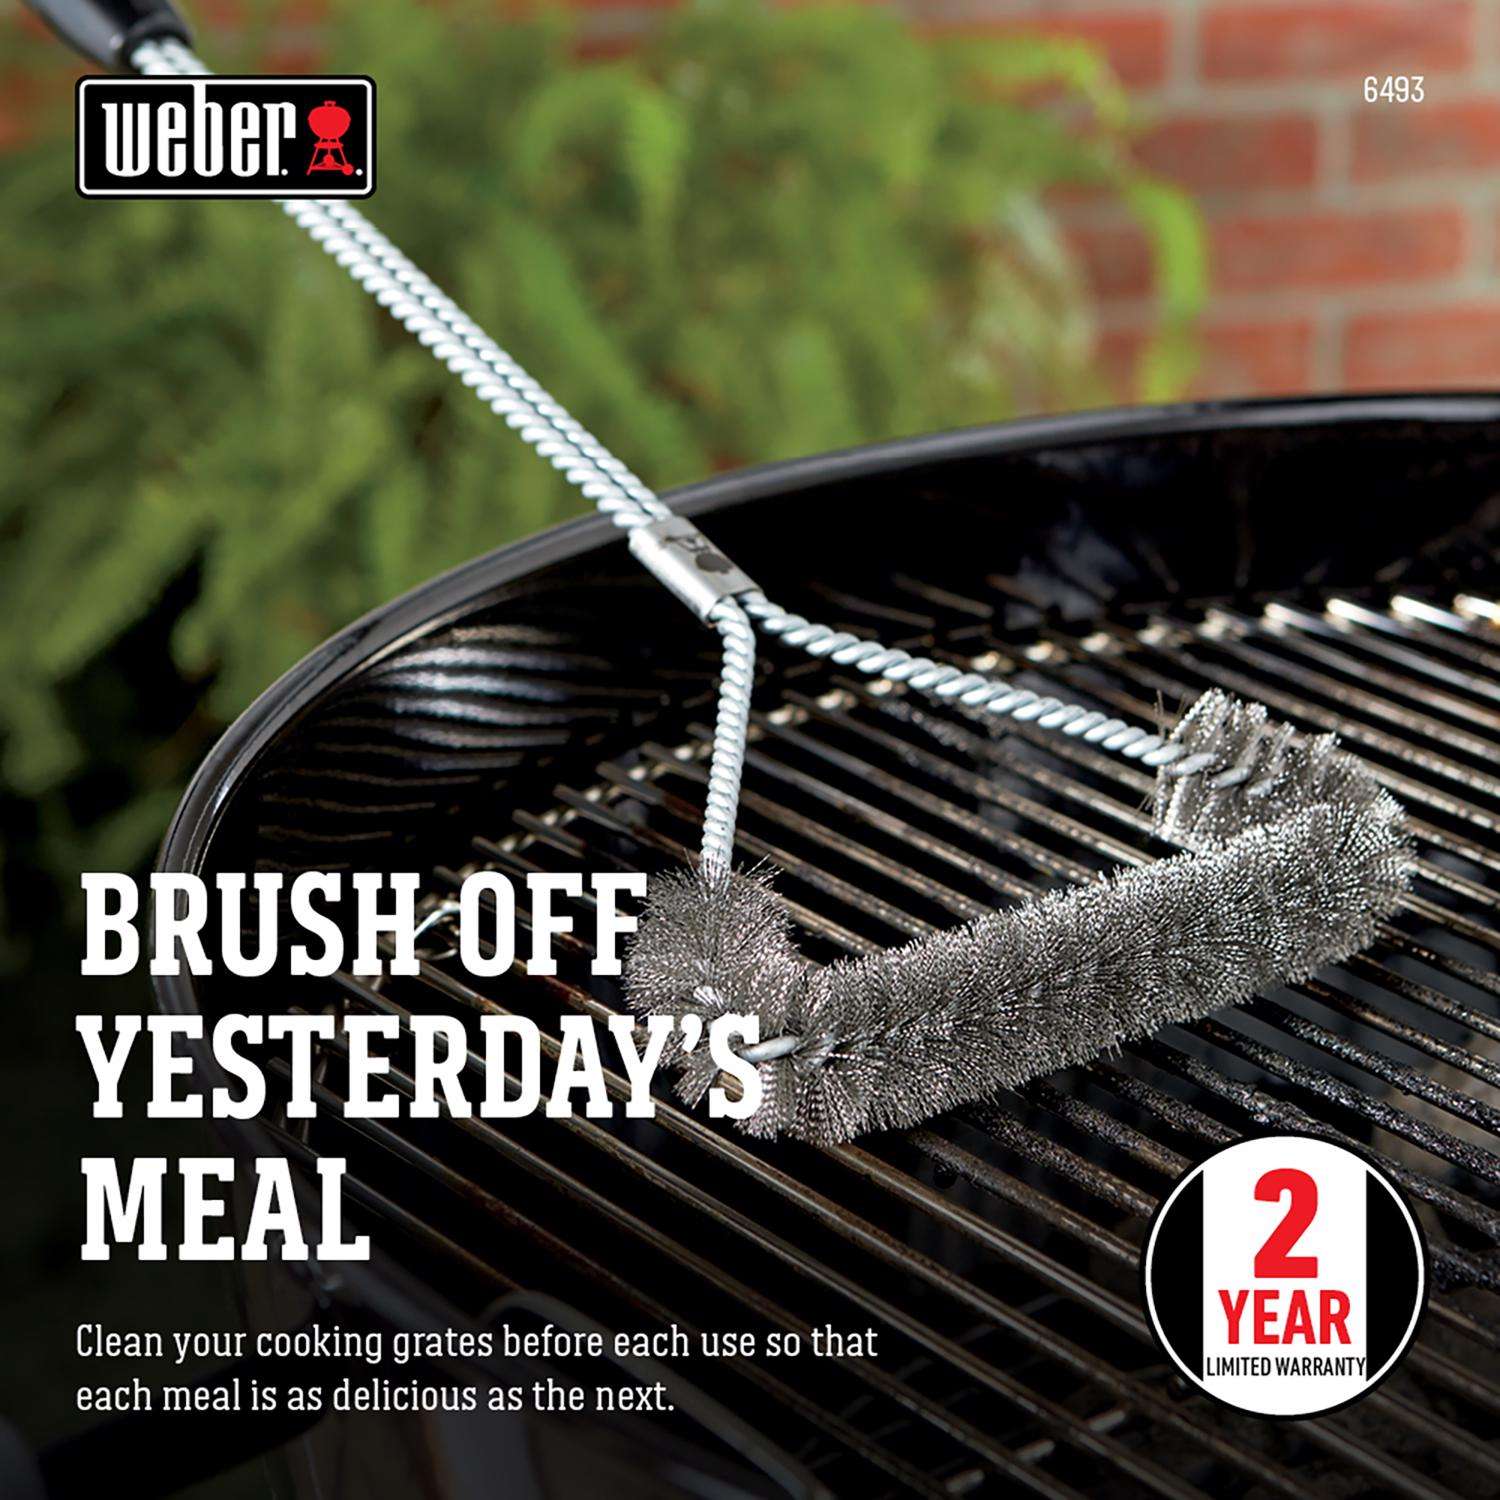 Weber 21 Grill Brush